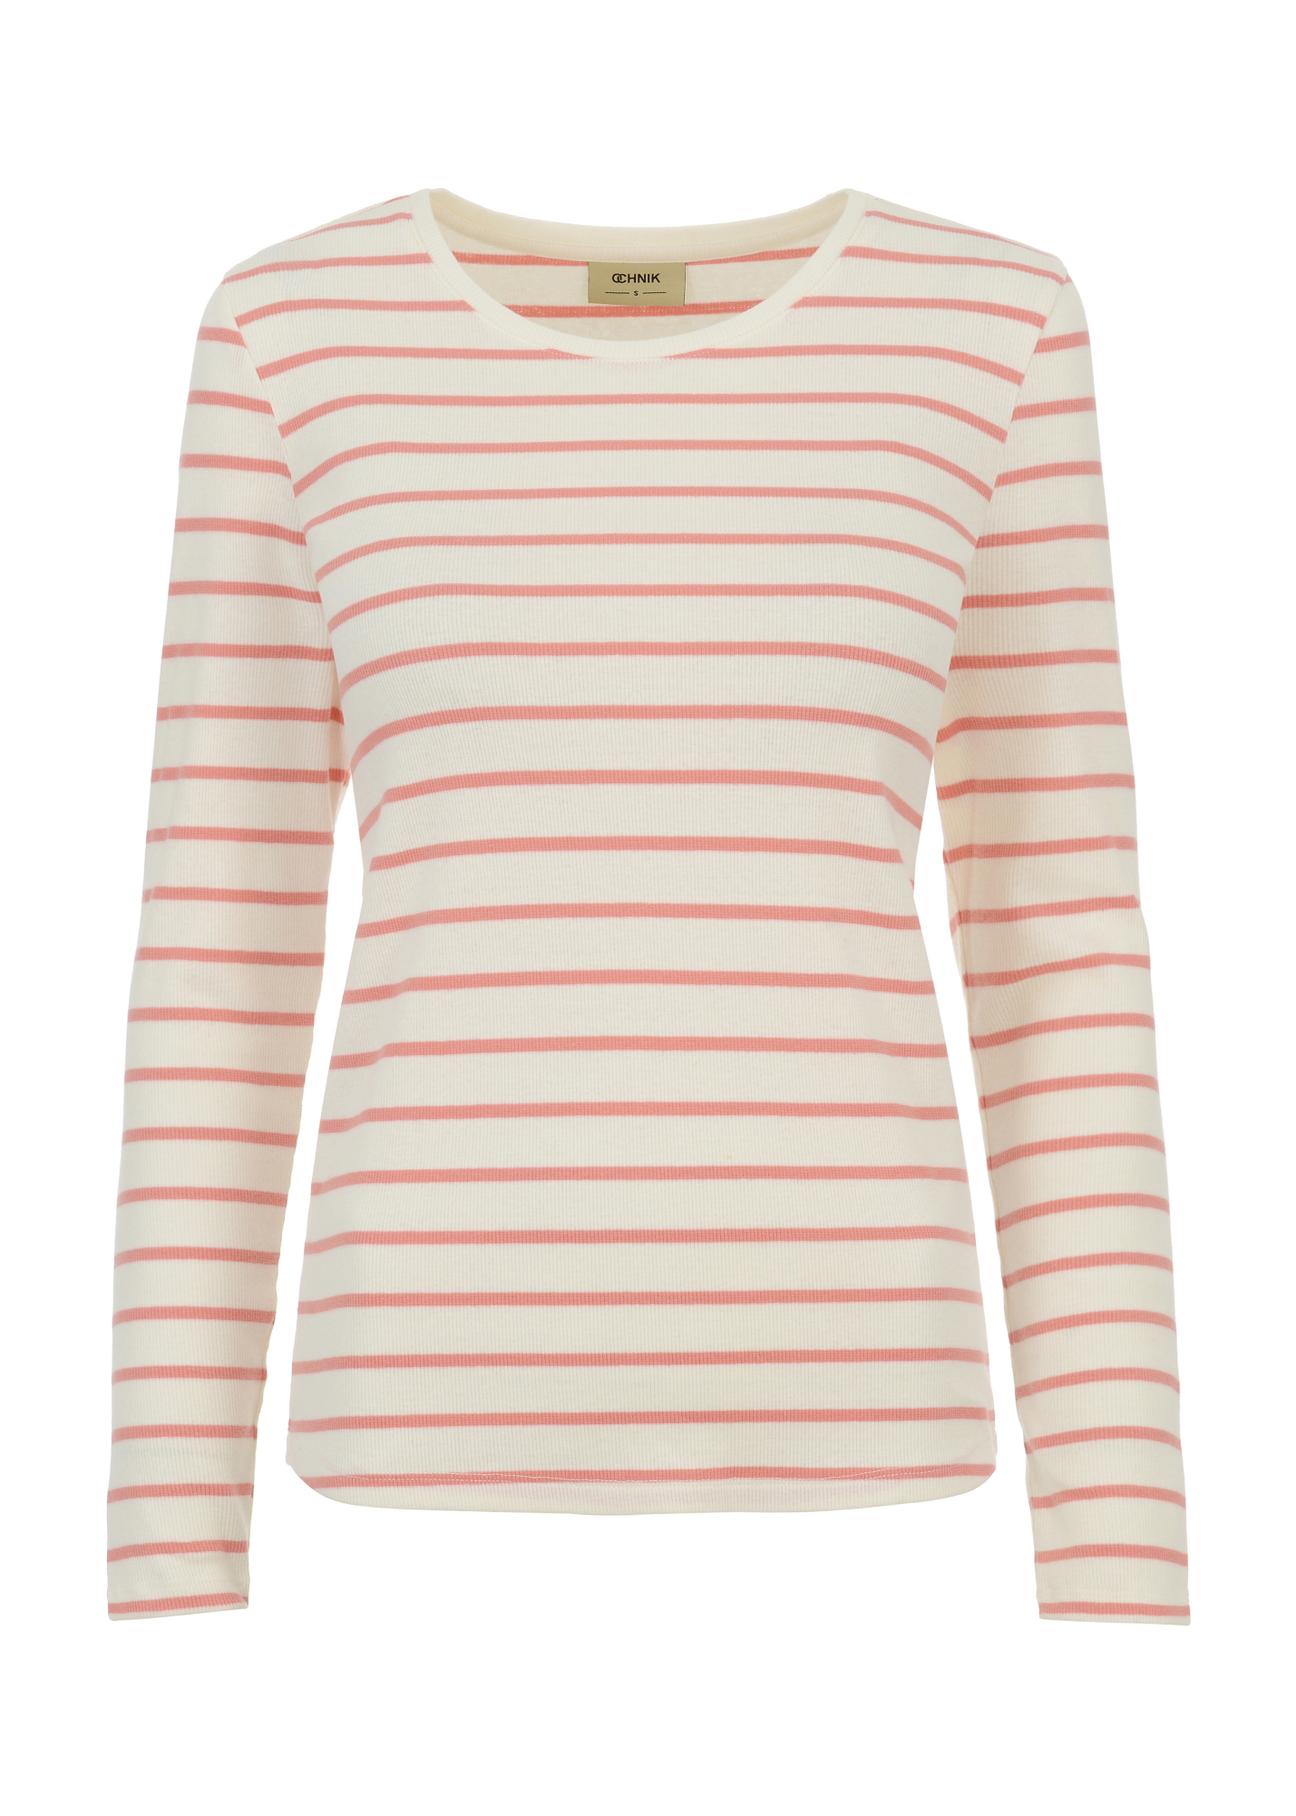 Kremowa bluzka damska w różowe paski LSLDT-0025-34(W23)